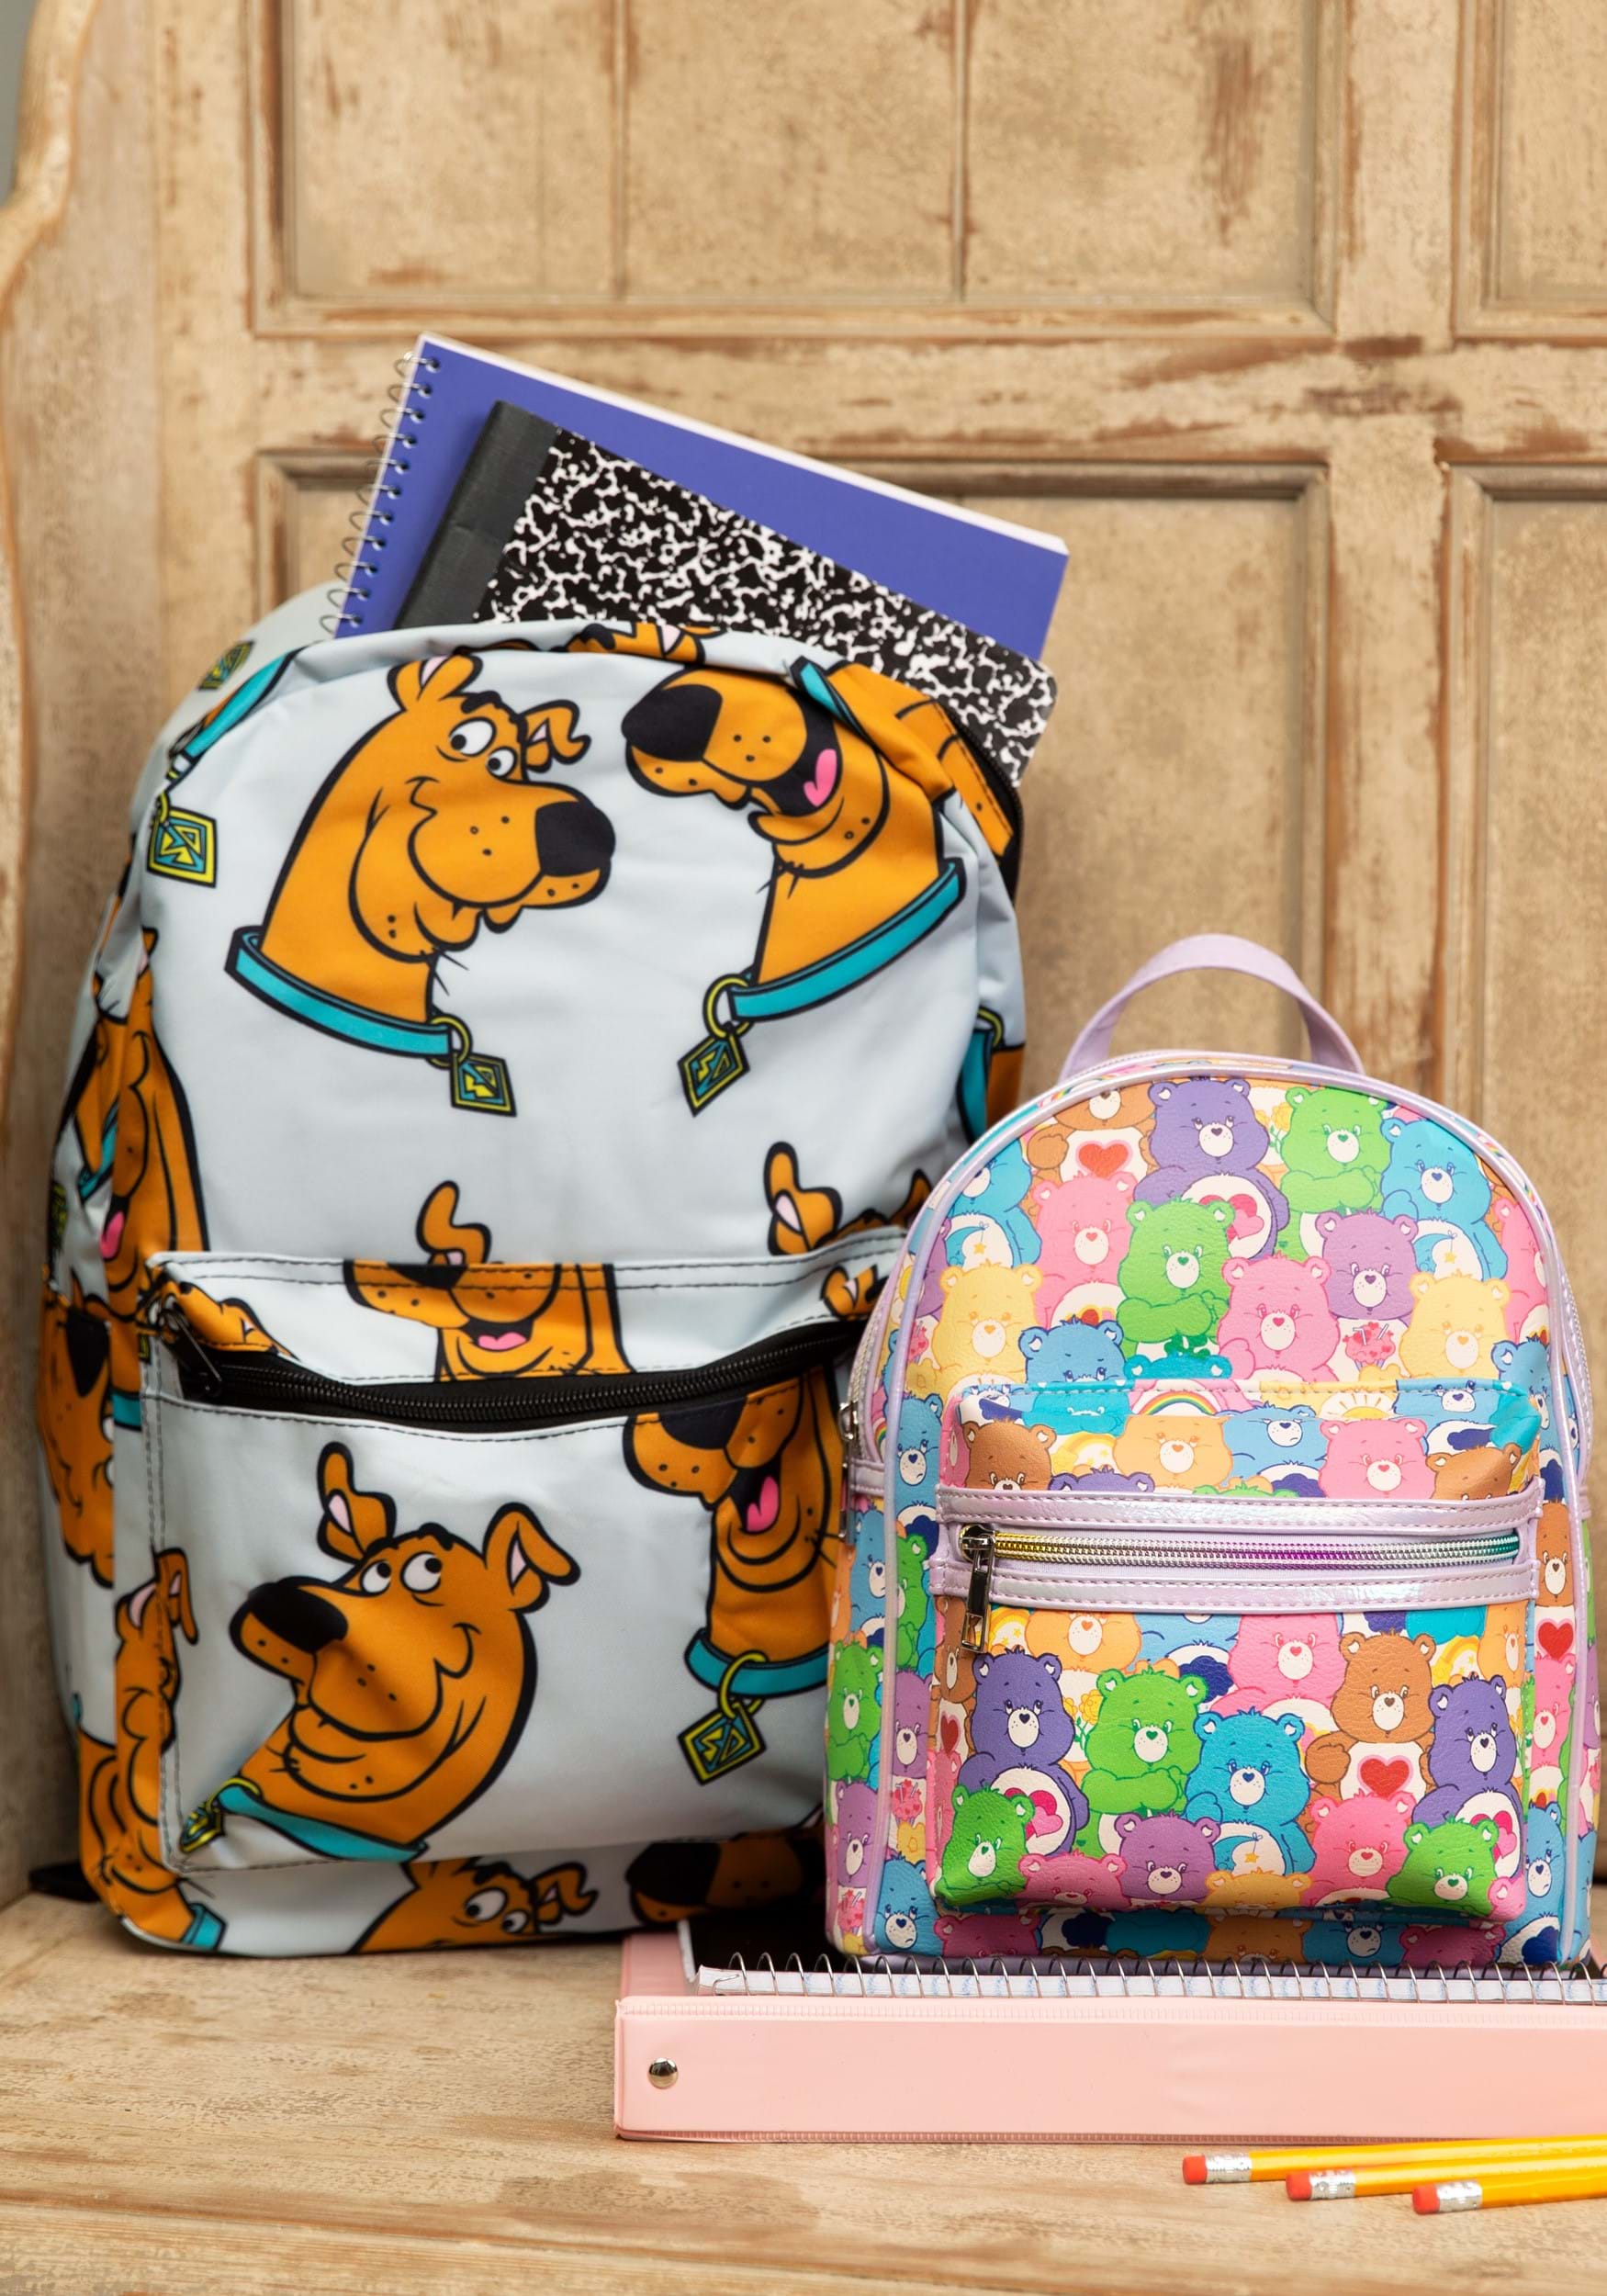 Bear face toddler backpack 